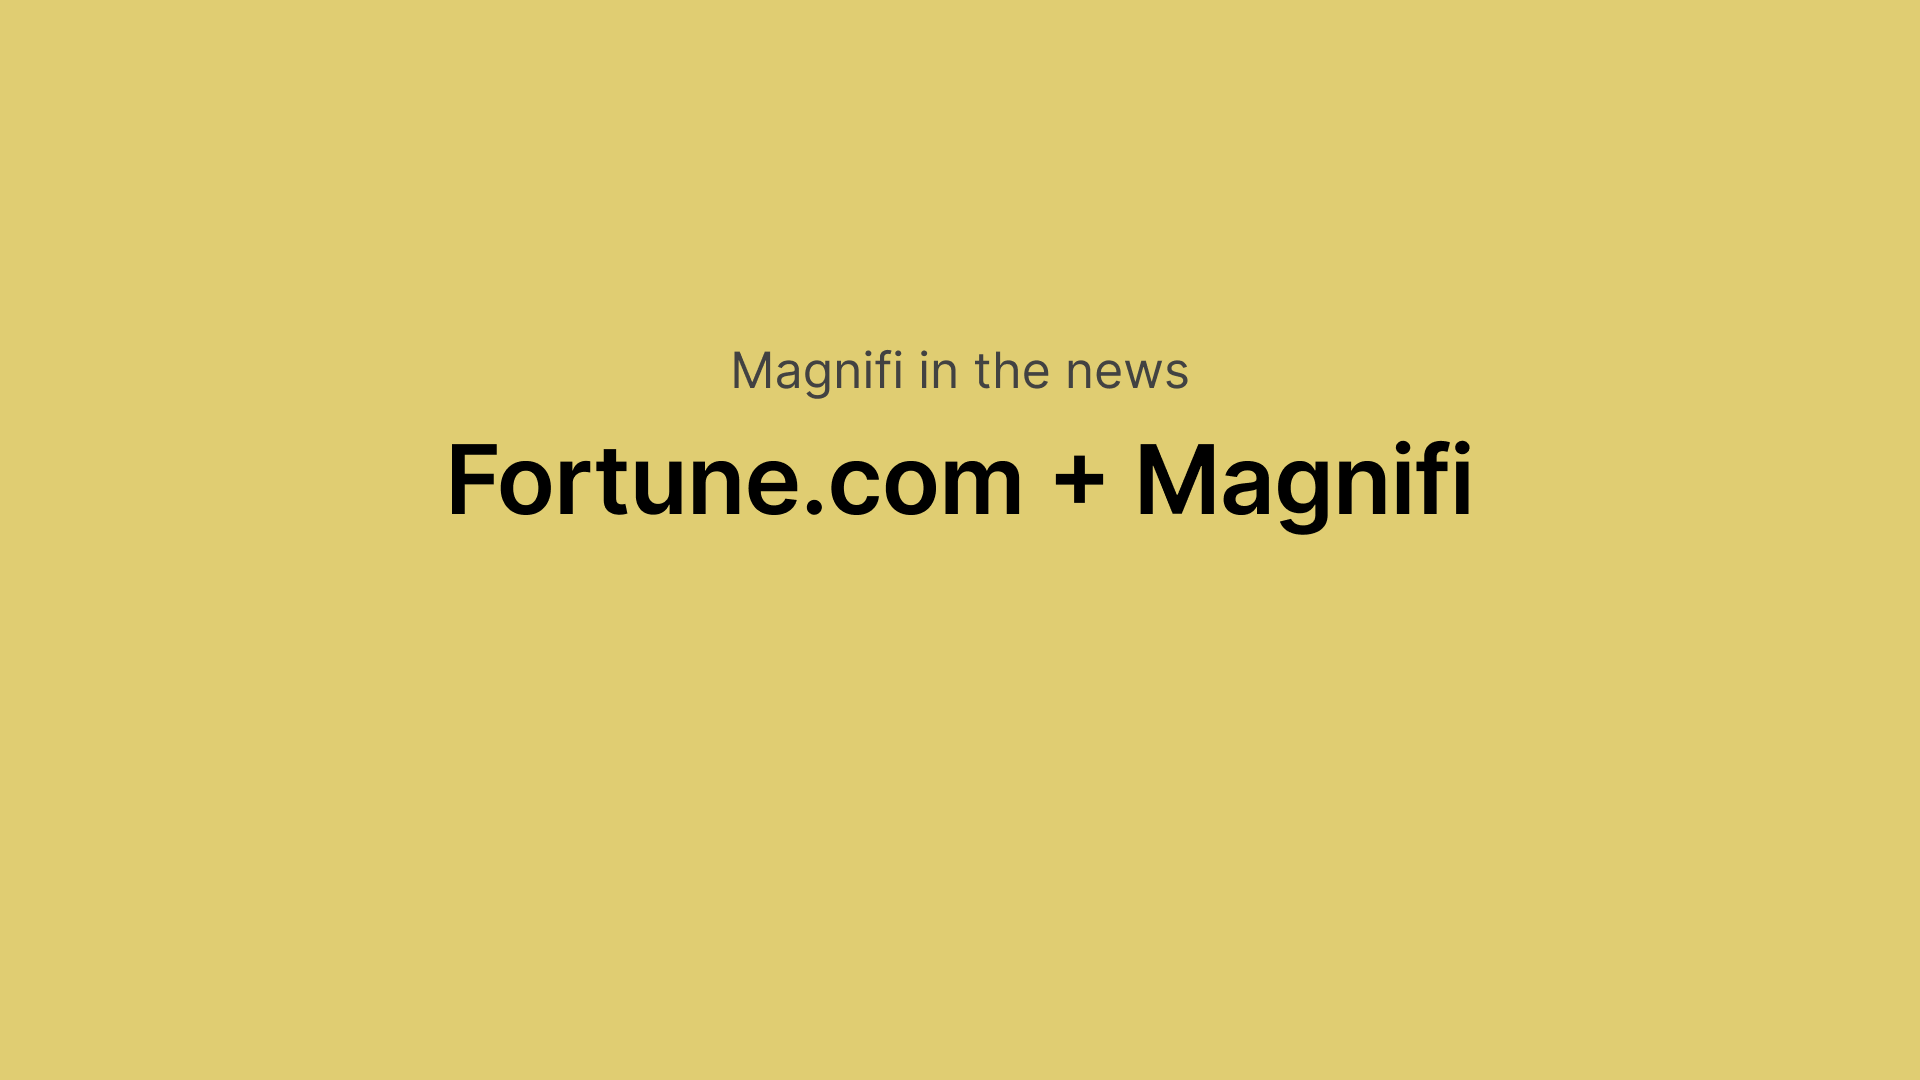 Fortune.com + Magnifi